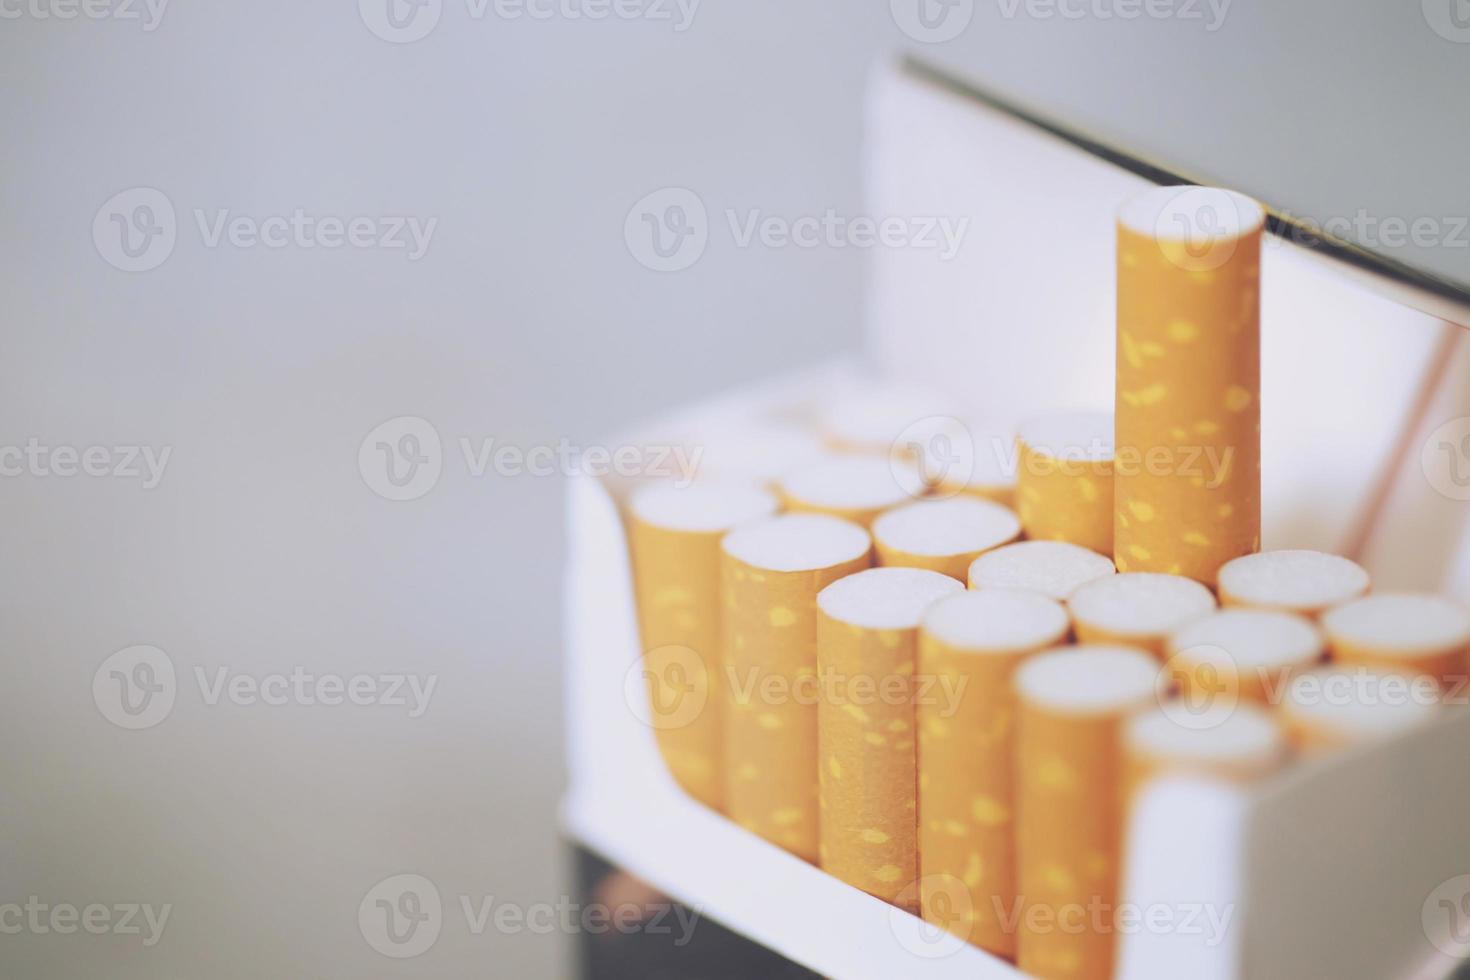 staccare il pacchetto di sigarette prepararsi a fumare una sigaretta. imballaggio in linea. foto filtra la luce naturale.